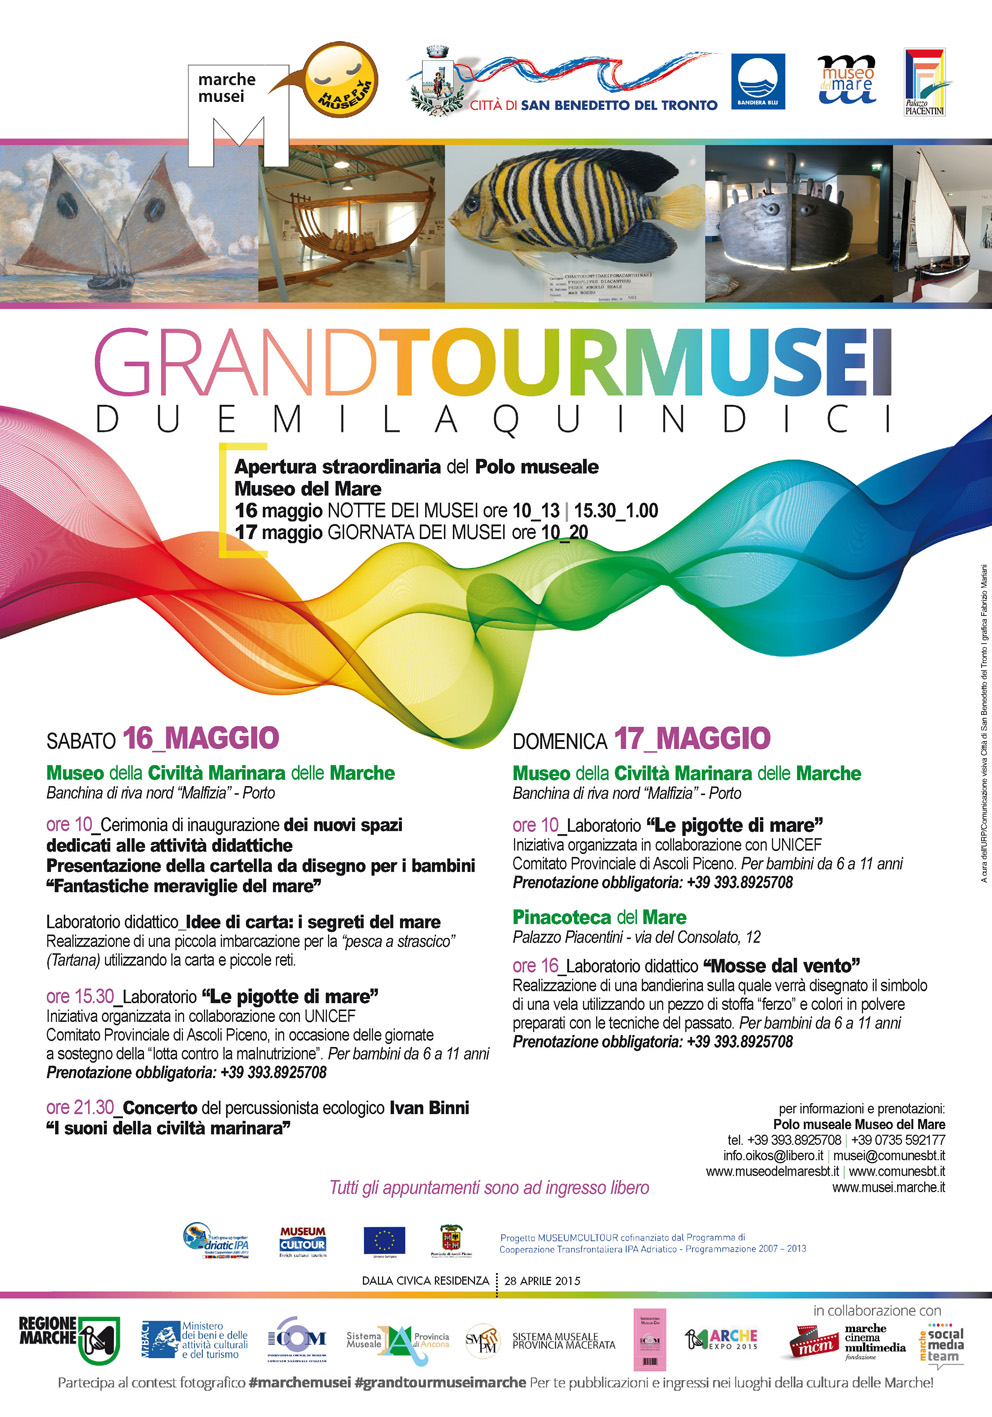 Il manifesto del Grand Tour Musei 2015 